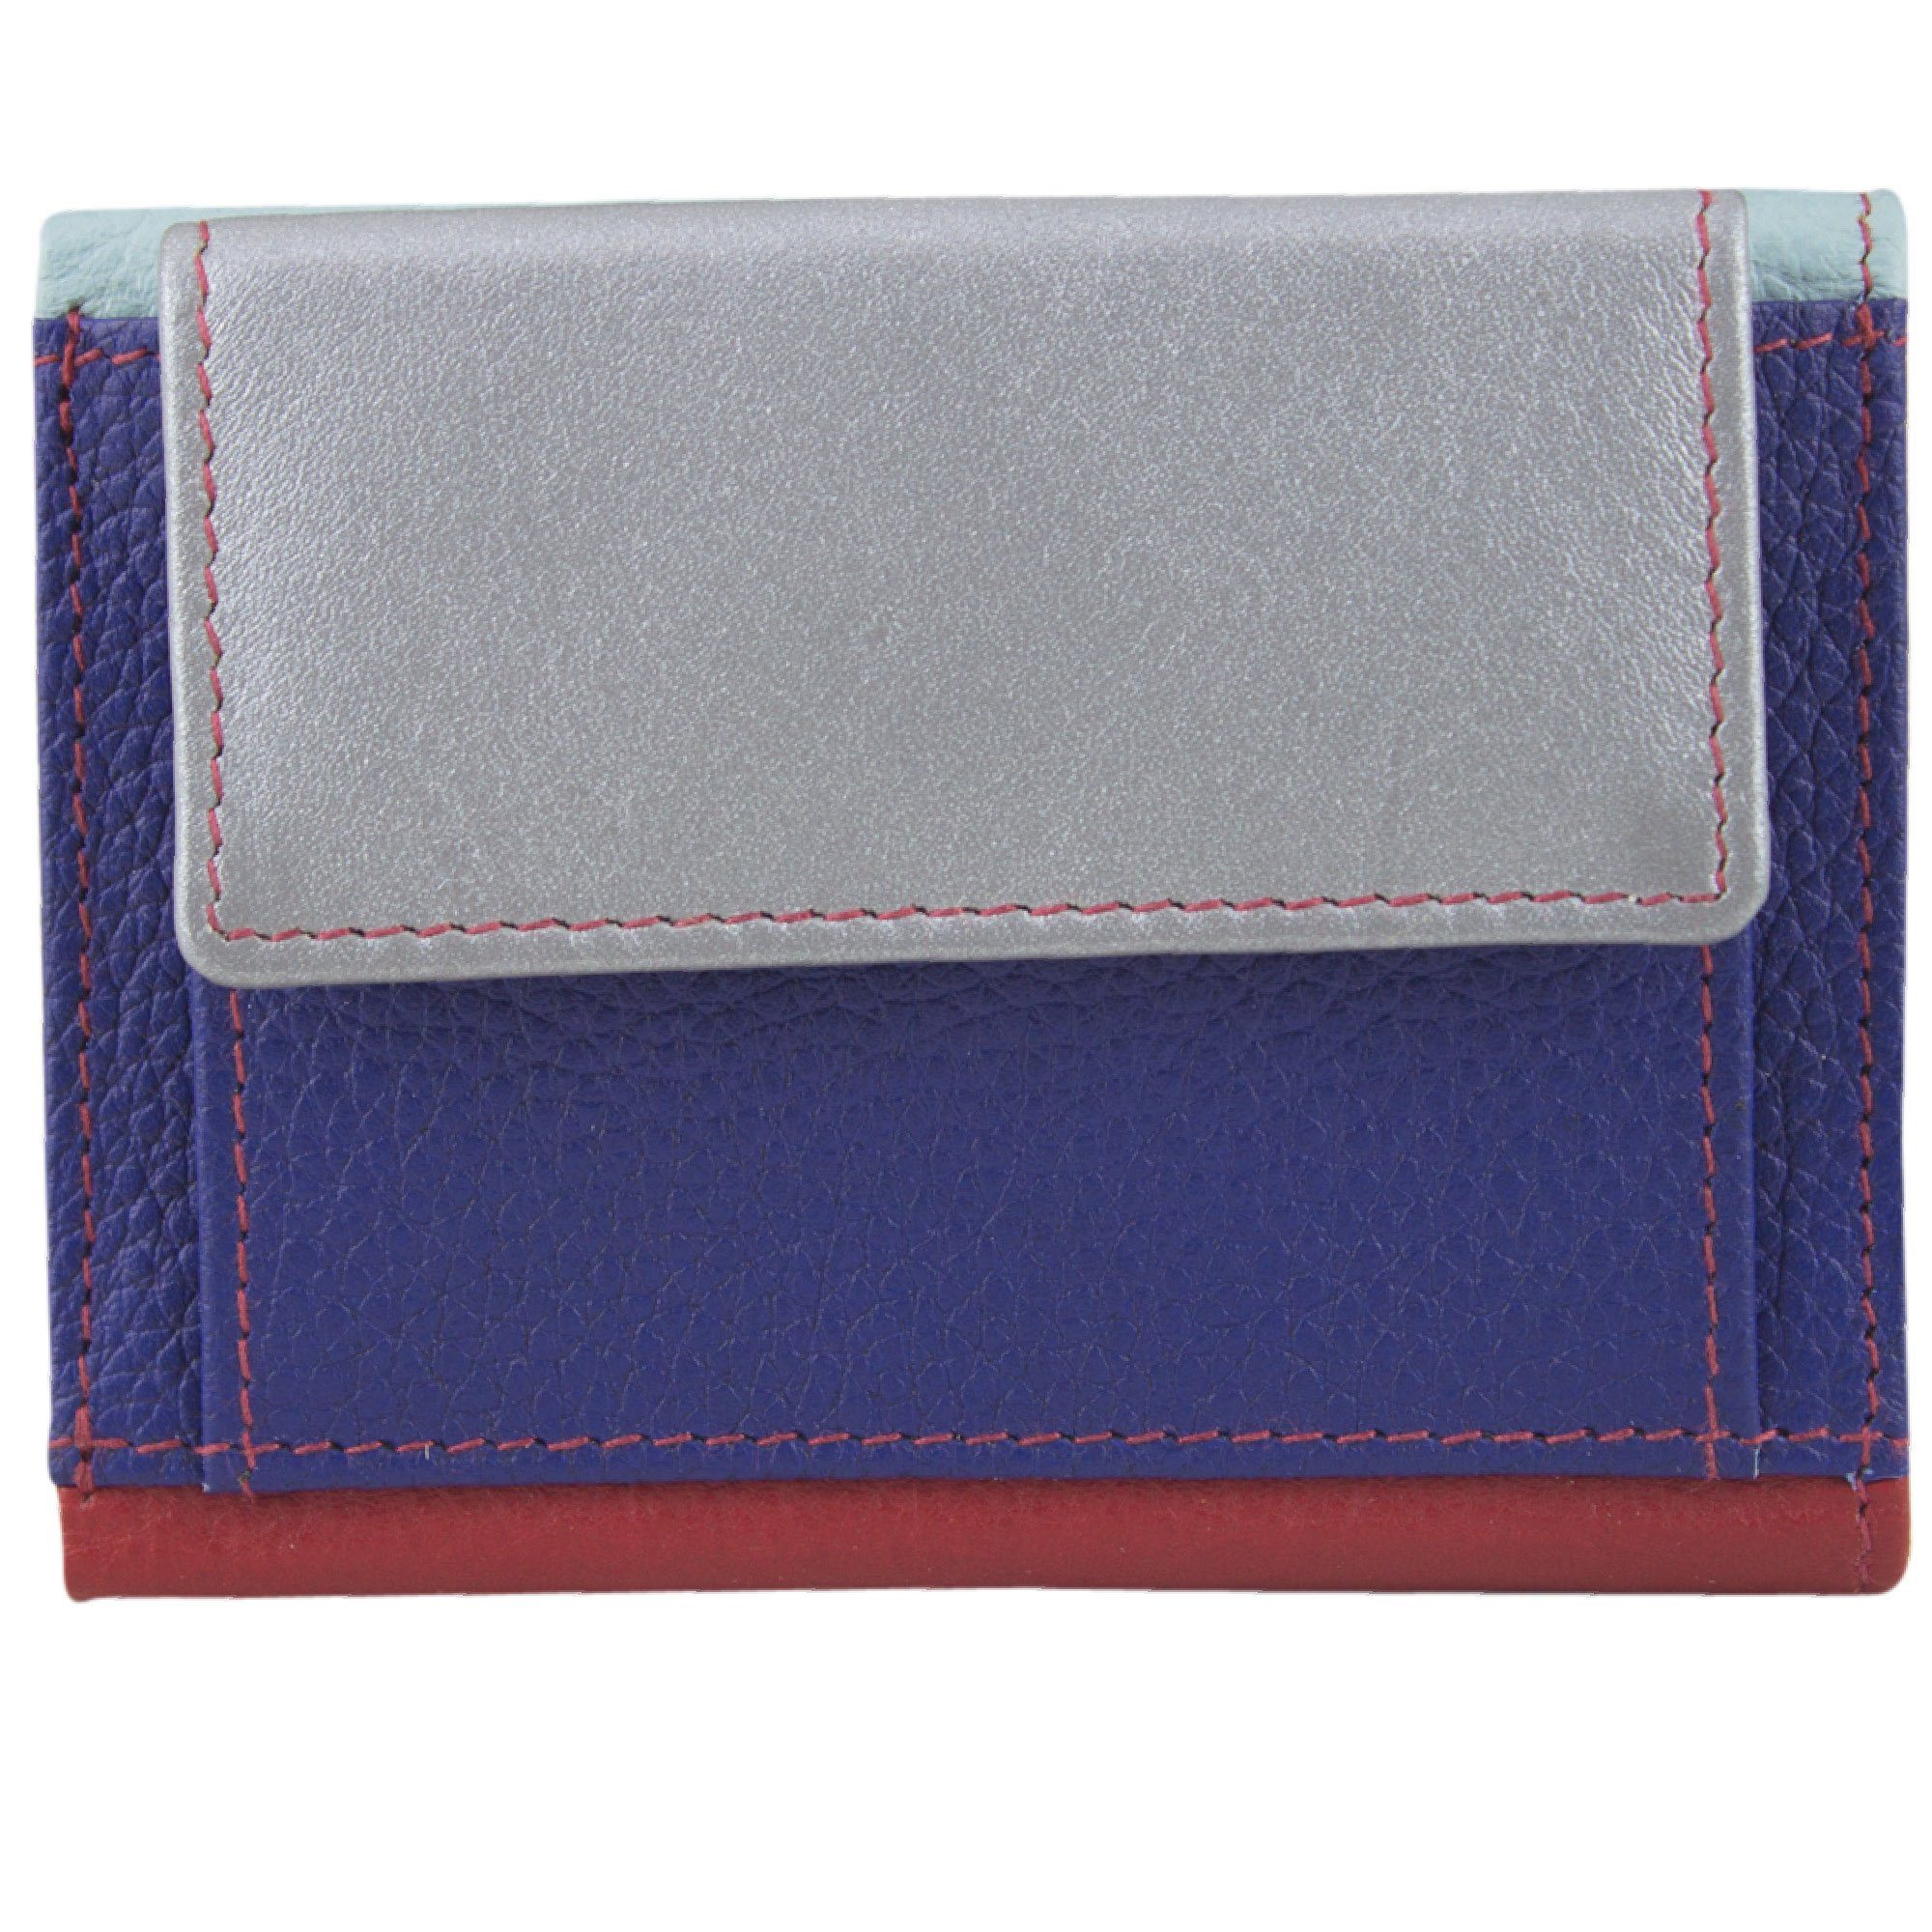 Sunsa Mini klein Portemonnaie Unisex recycelten Lederresten, RFID-Schutz, aus Leder echt Mini Geldbeutel mit Brieftasche, blau/silber/rot Geldbörse Geldbörse Leder